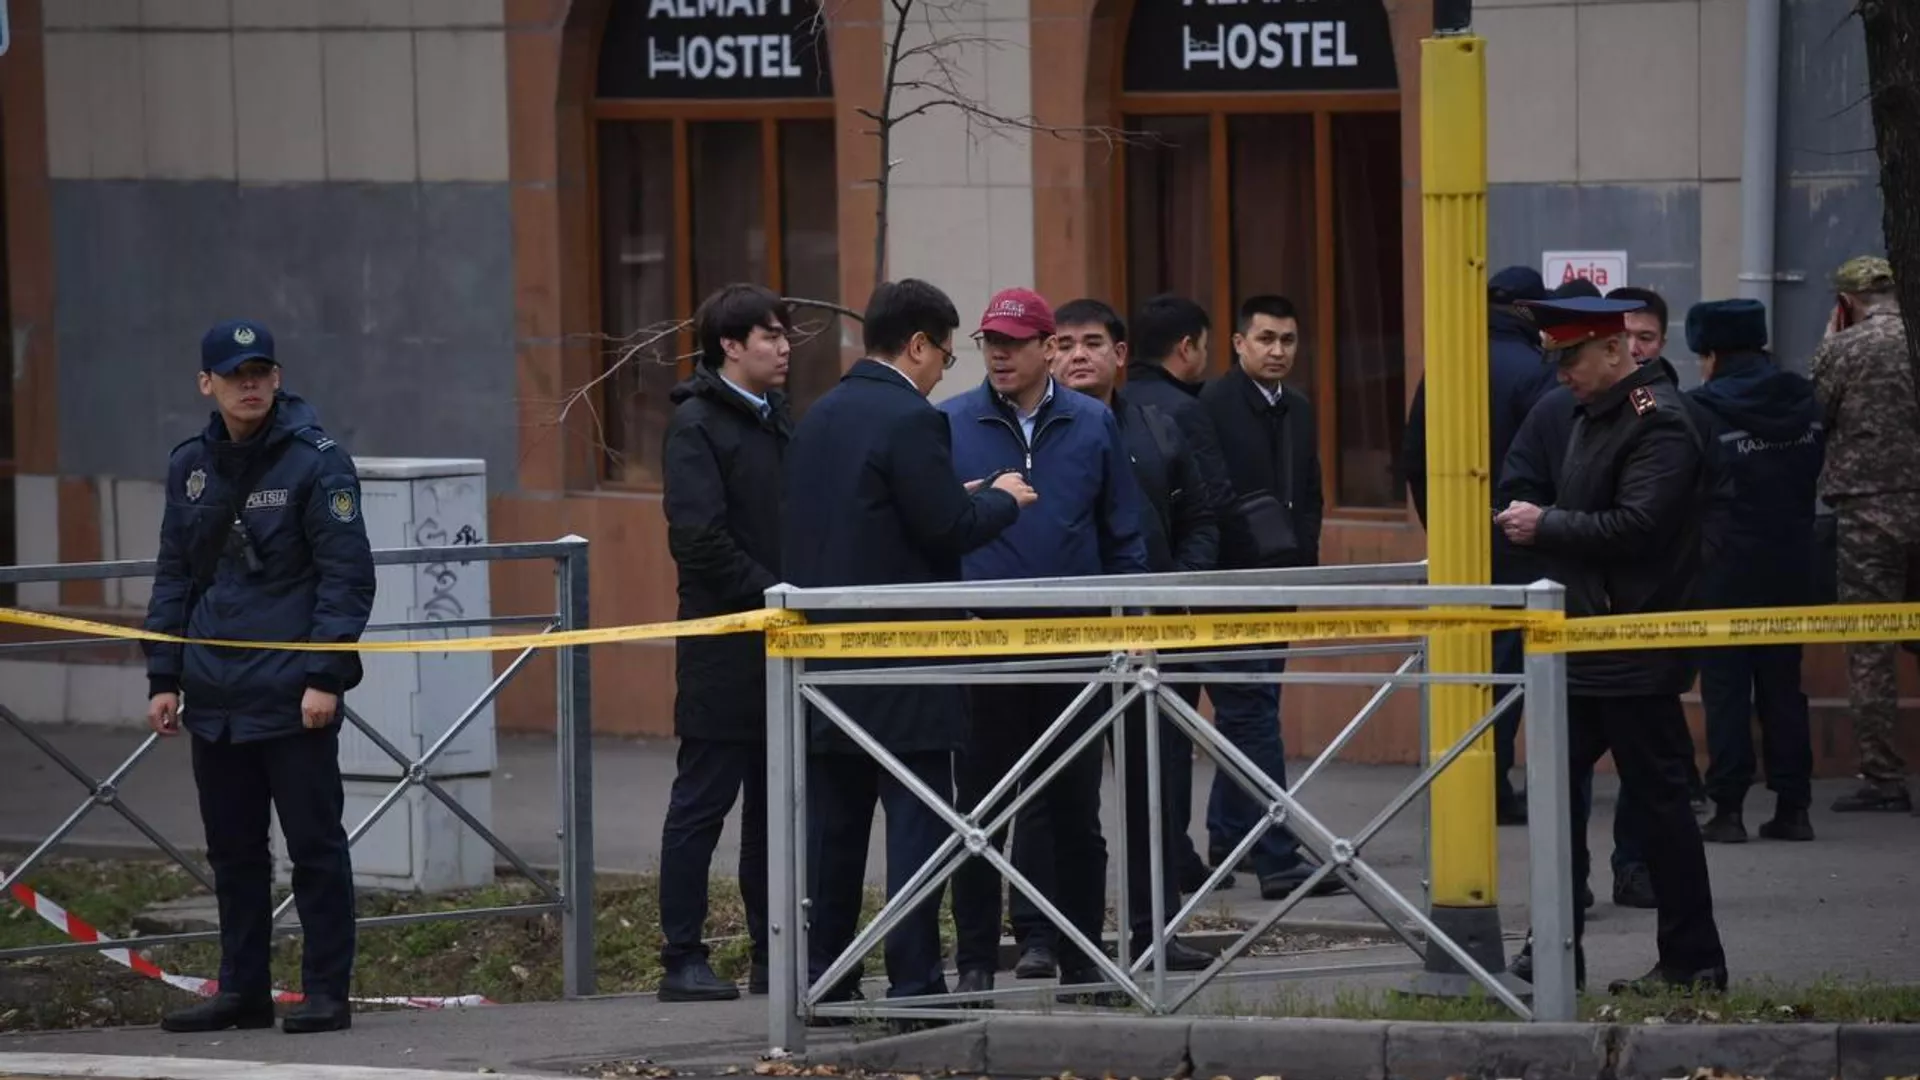 Хостел в Алматы, где произошел пожар, не имел разрешения на работу - ДЧС